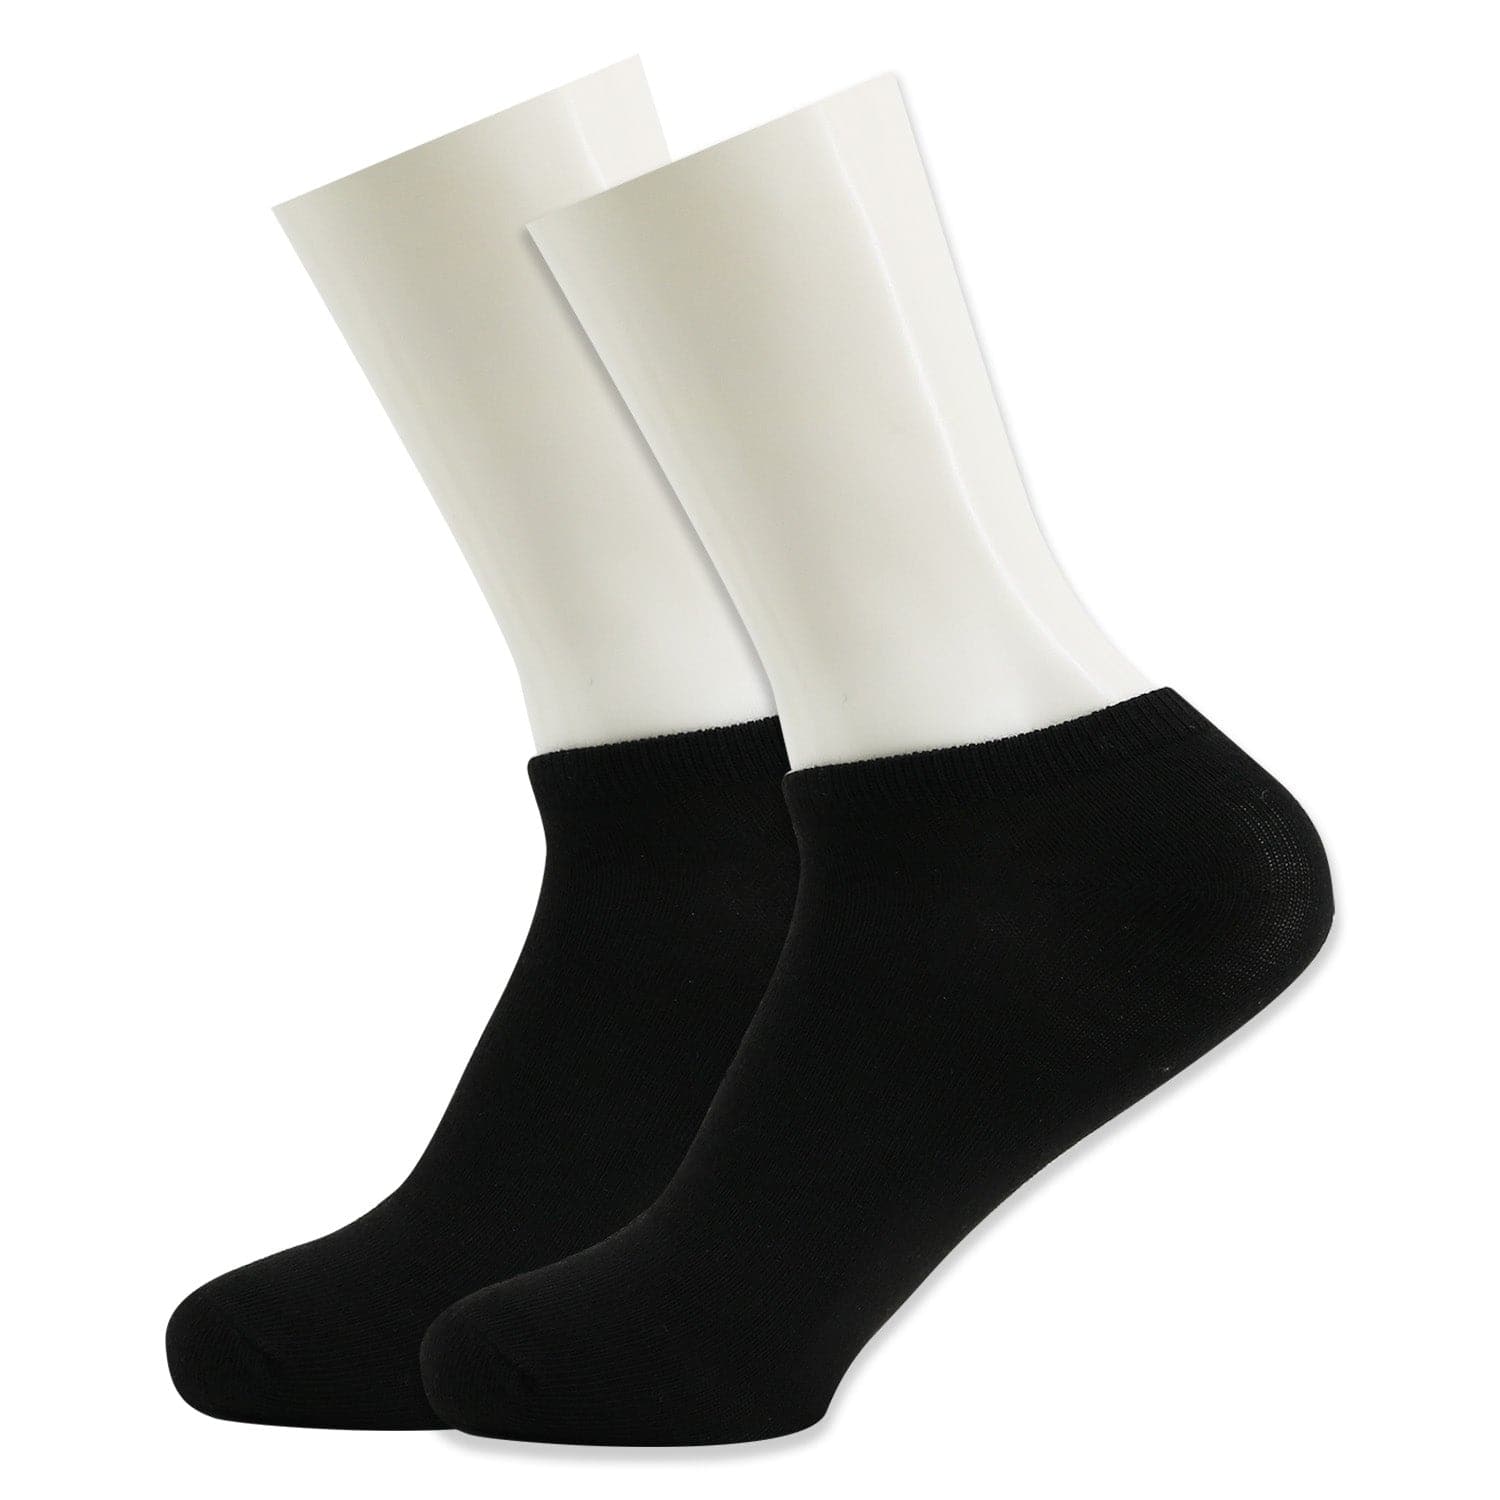 Men's No Show Wholesale Socks, Size 9-11 in Black - Bulk Case of 96 Pa